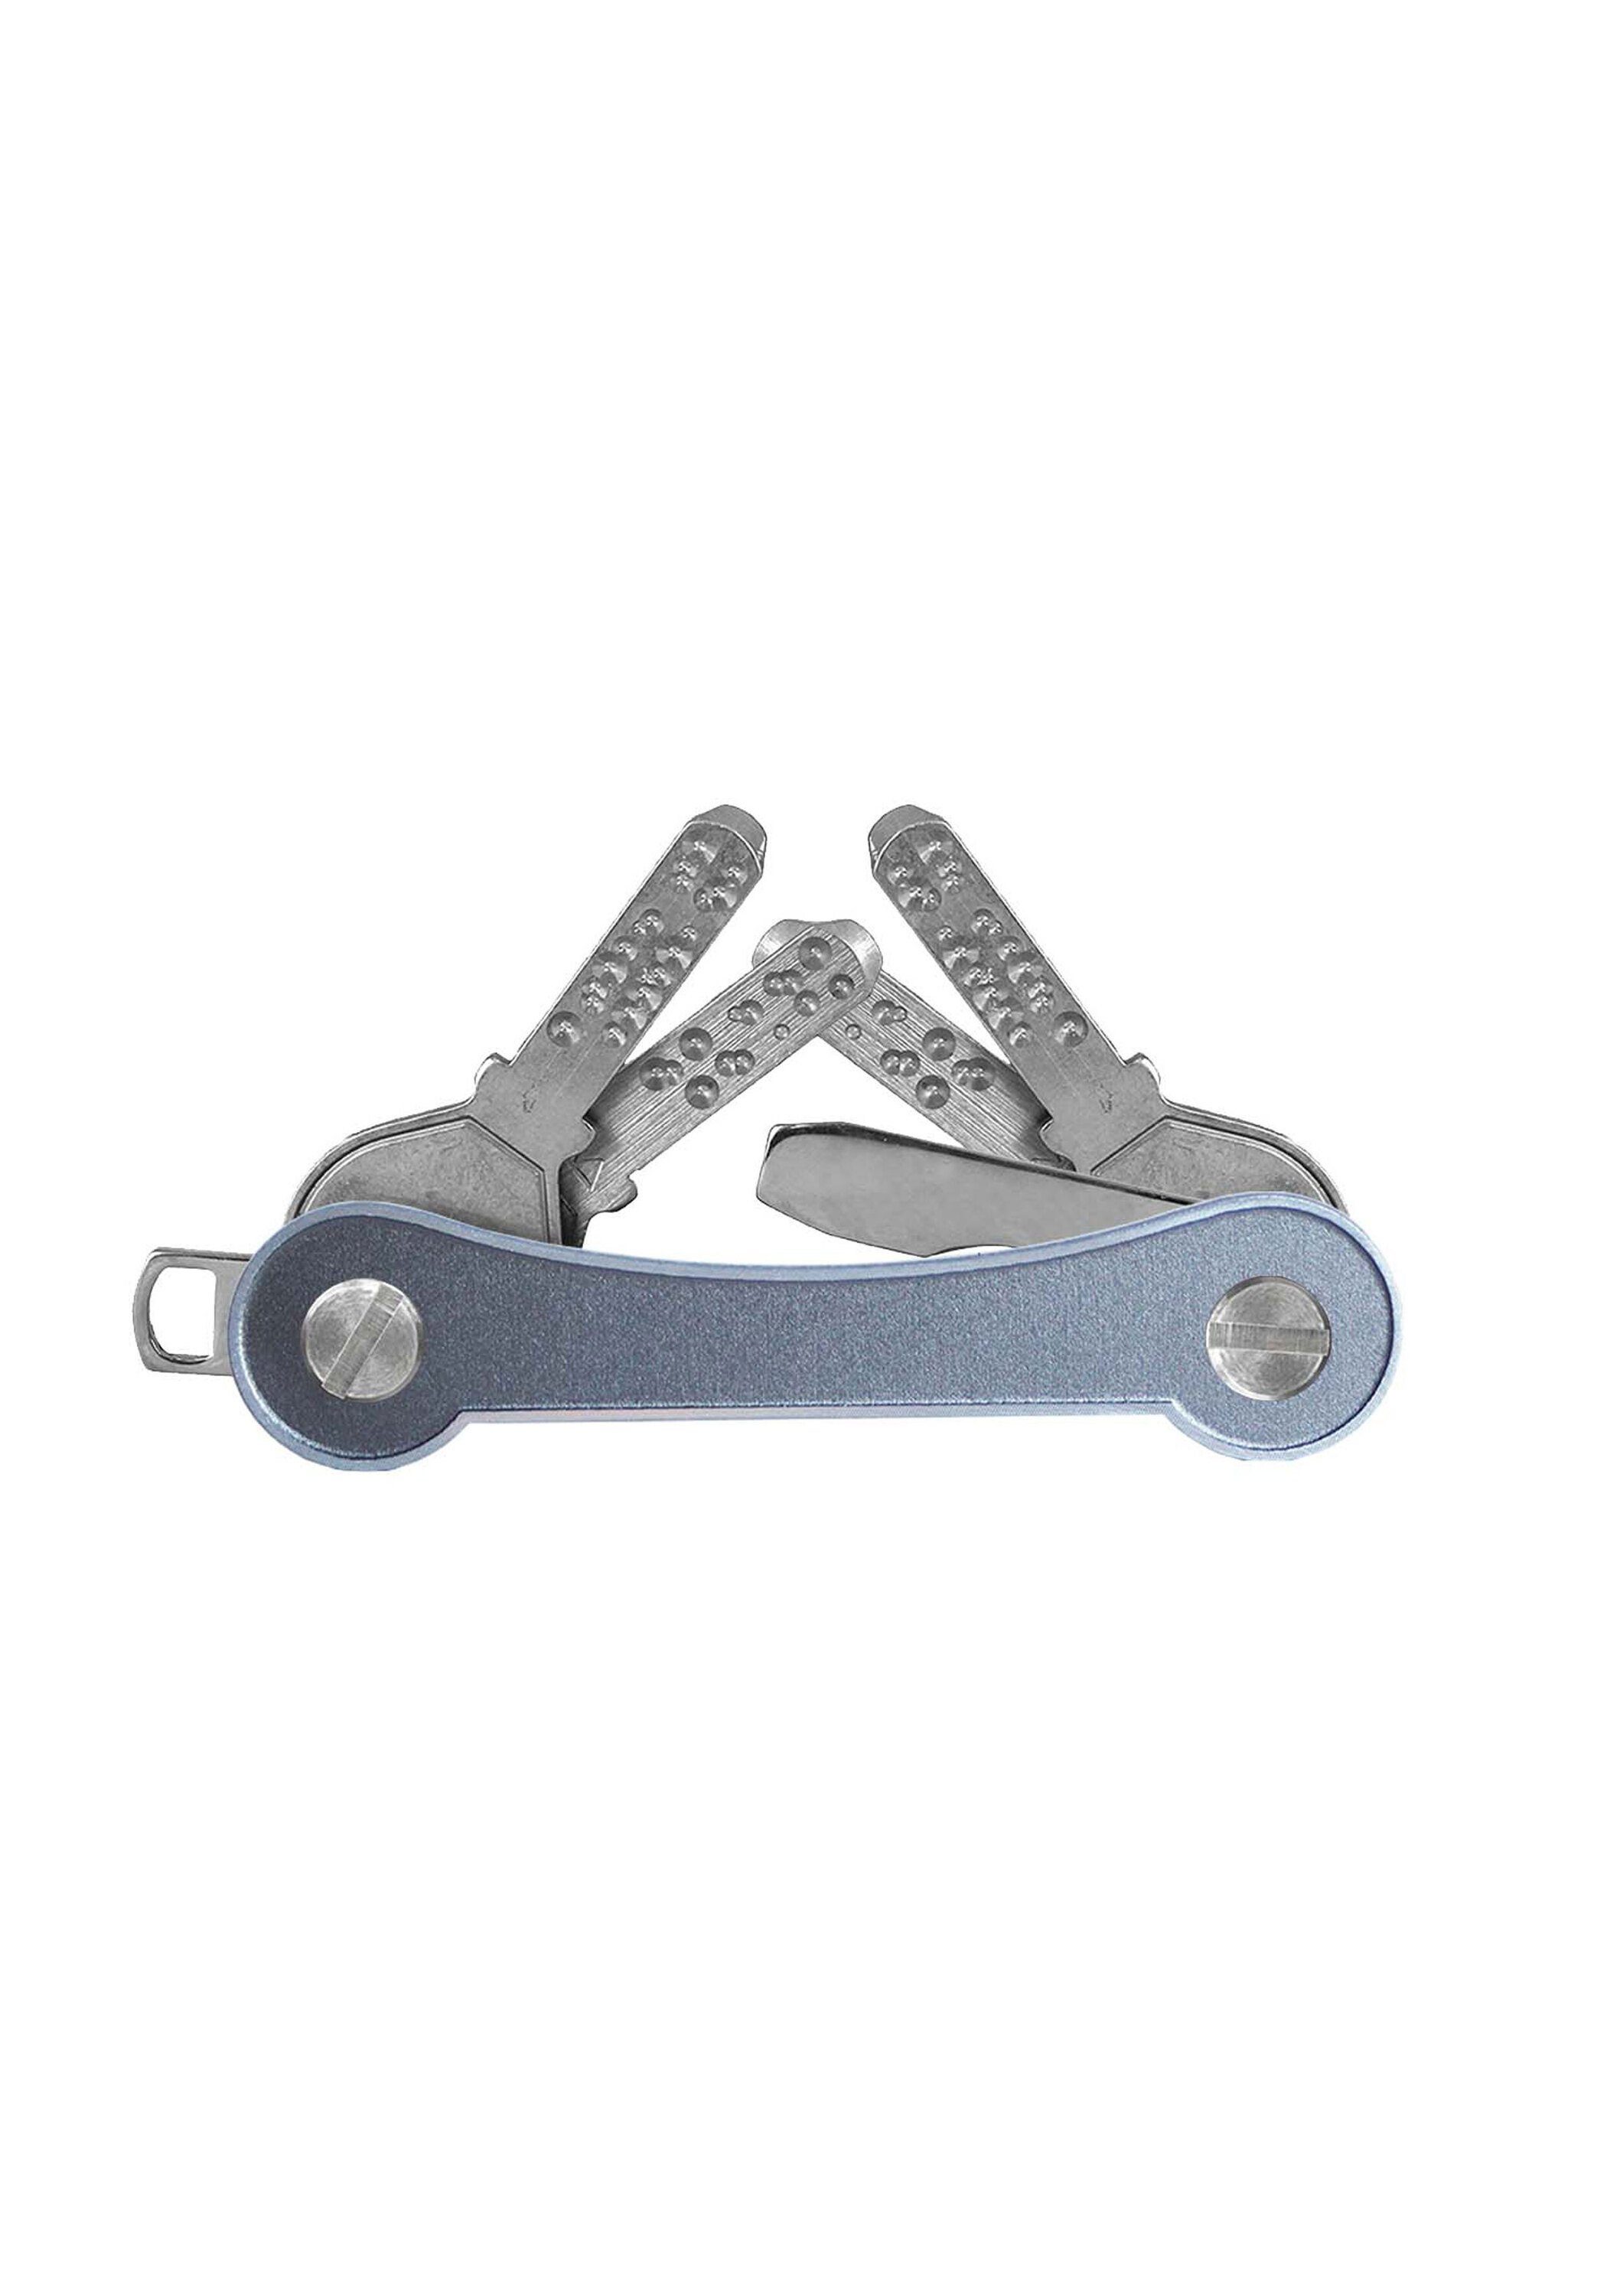 Made Schlüsselanhänger grau SWISS frame, keycabins Aluminium